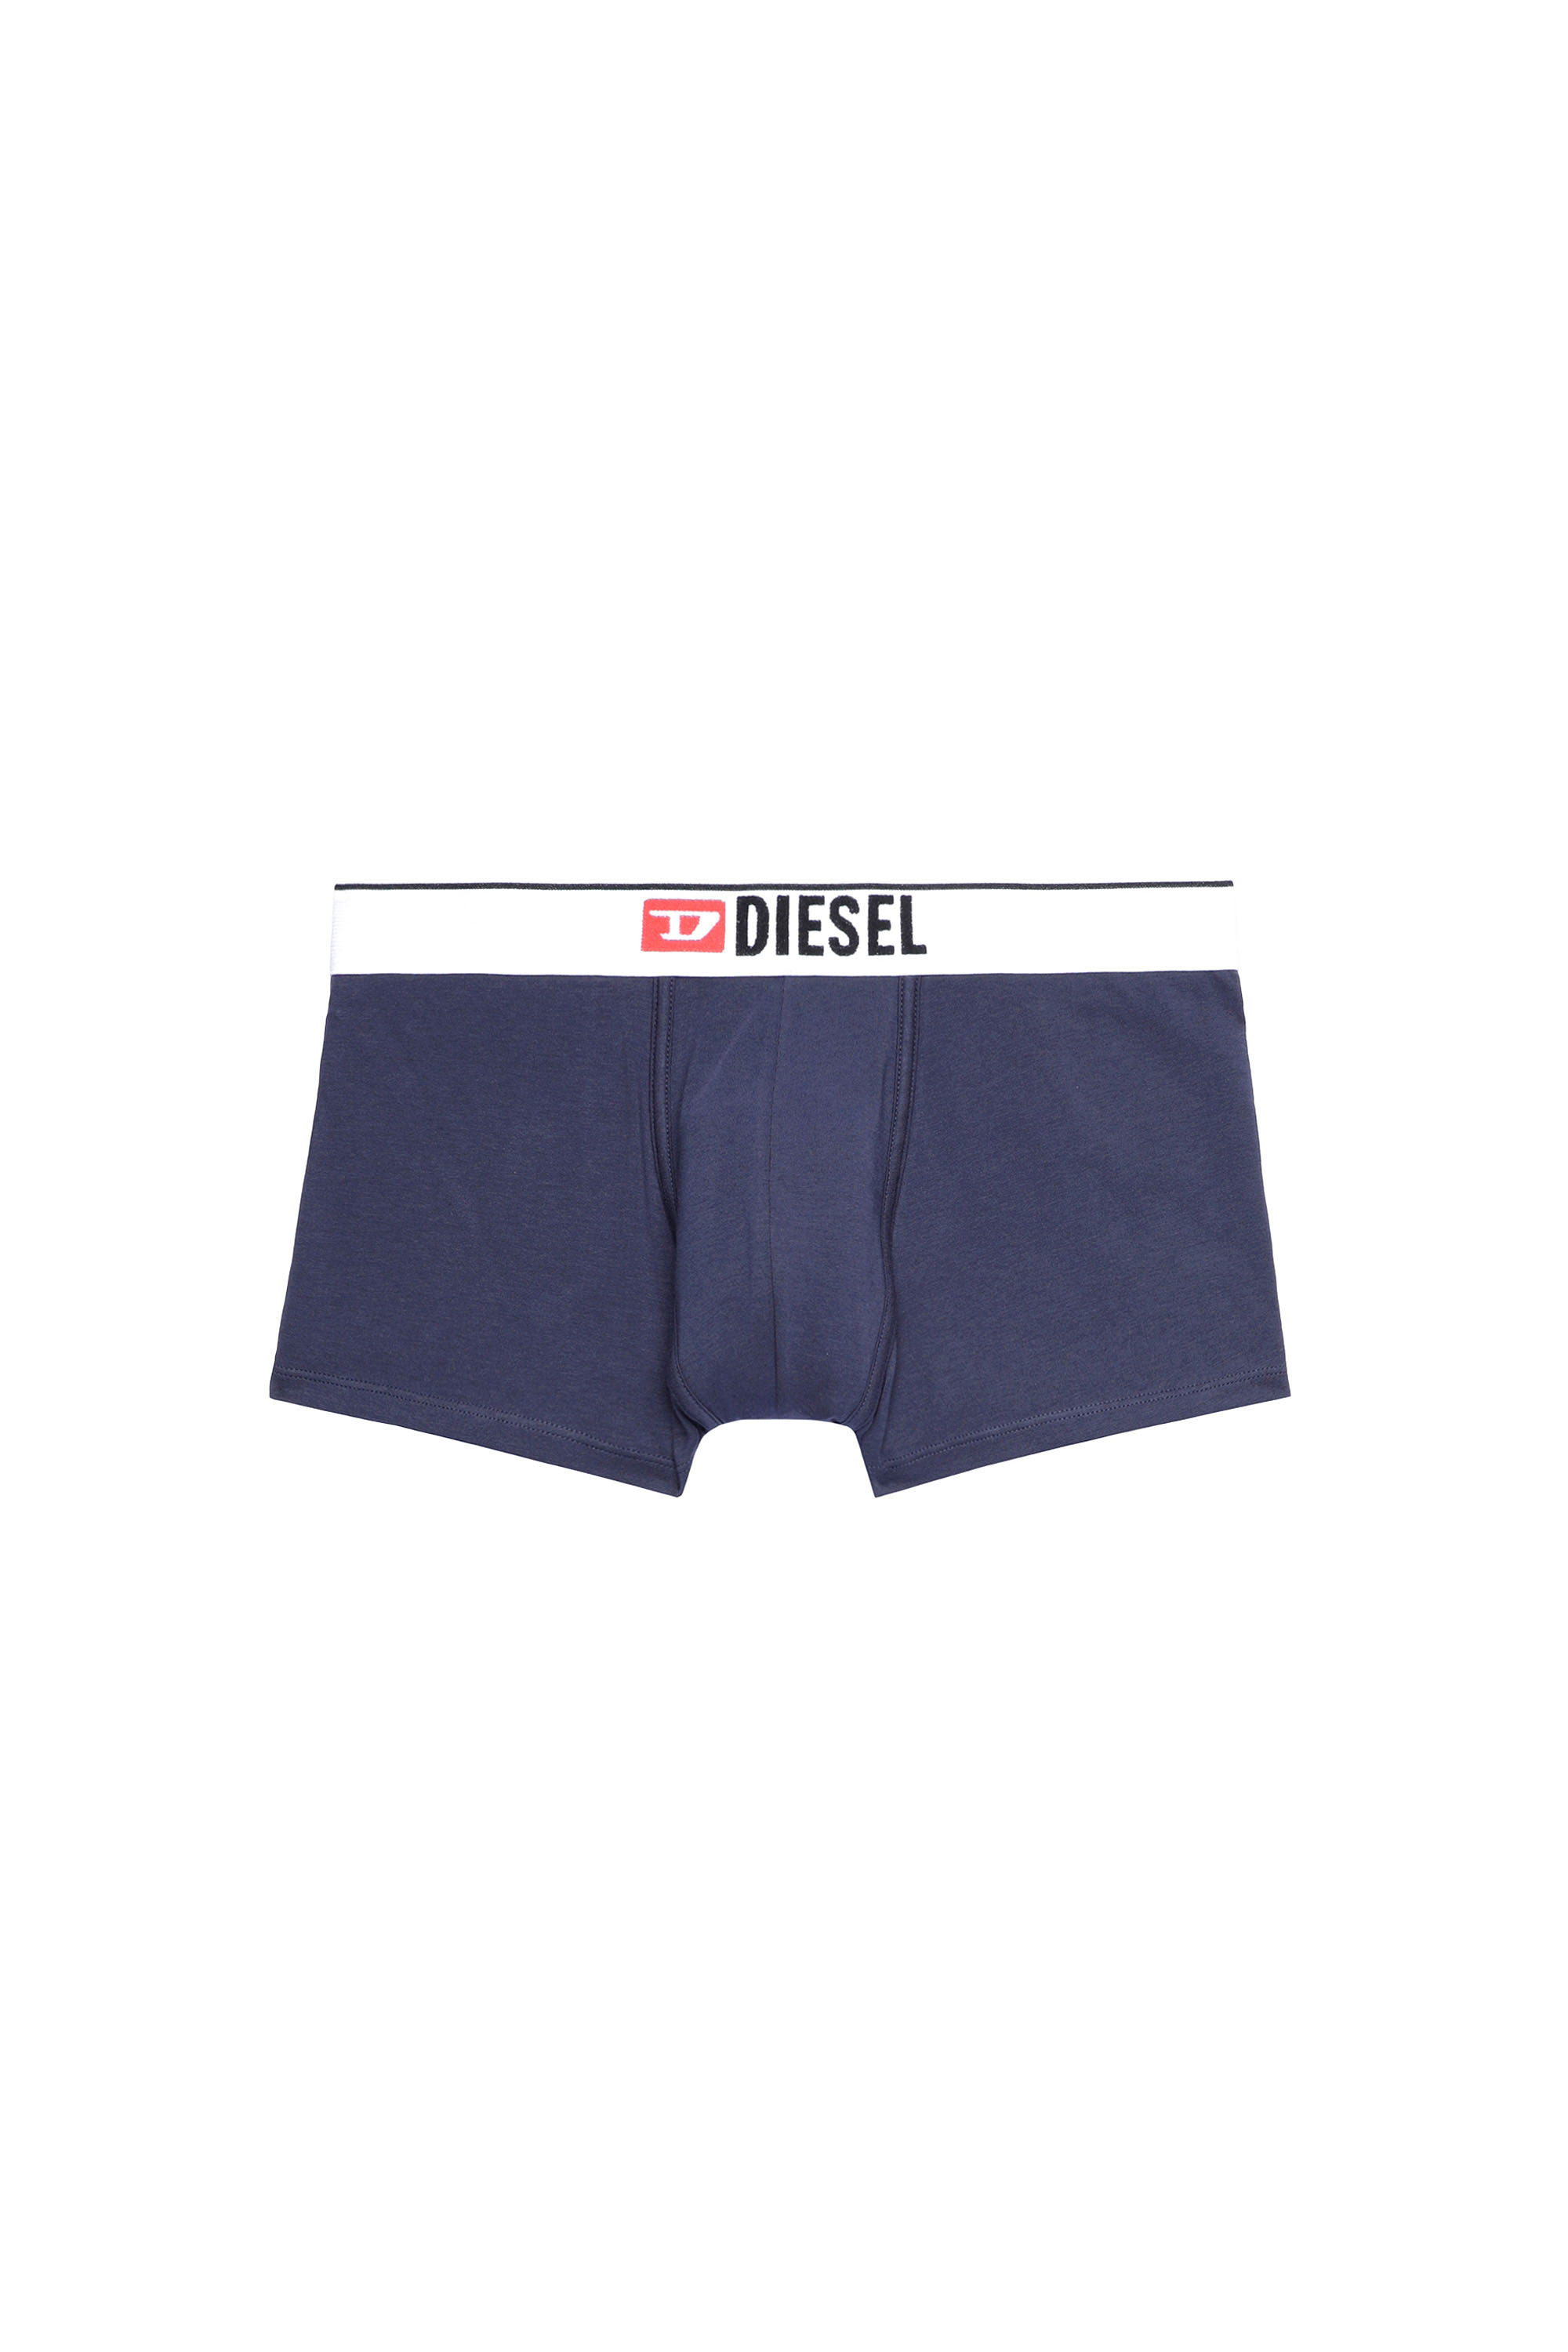 Diesel - UMBX-DAMIEN, ブルー - Image 1